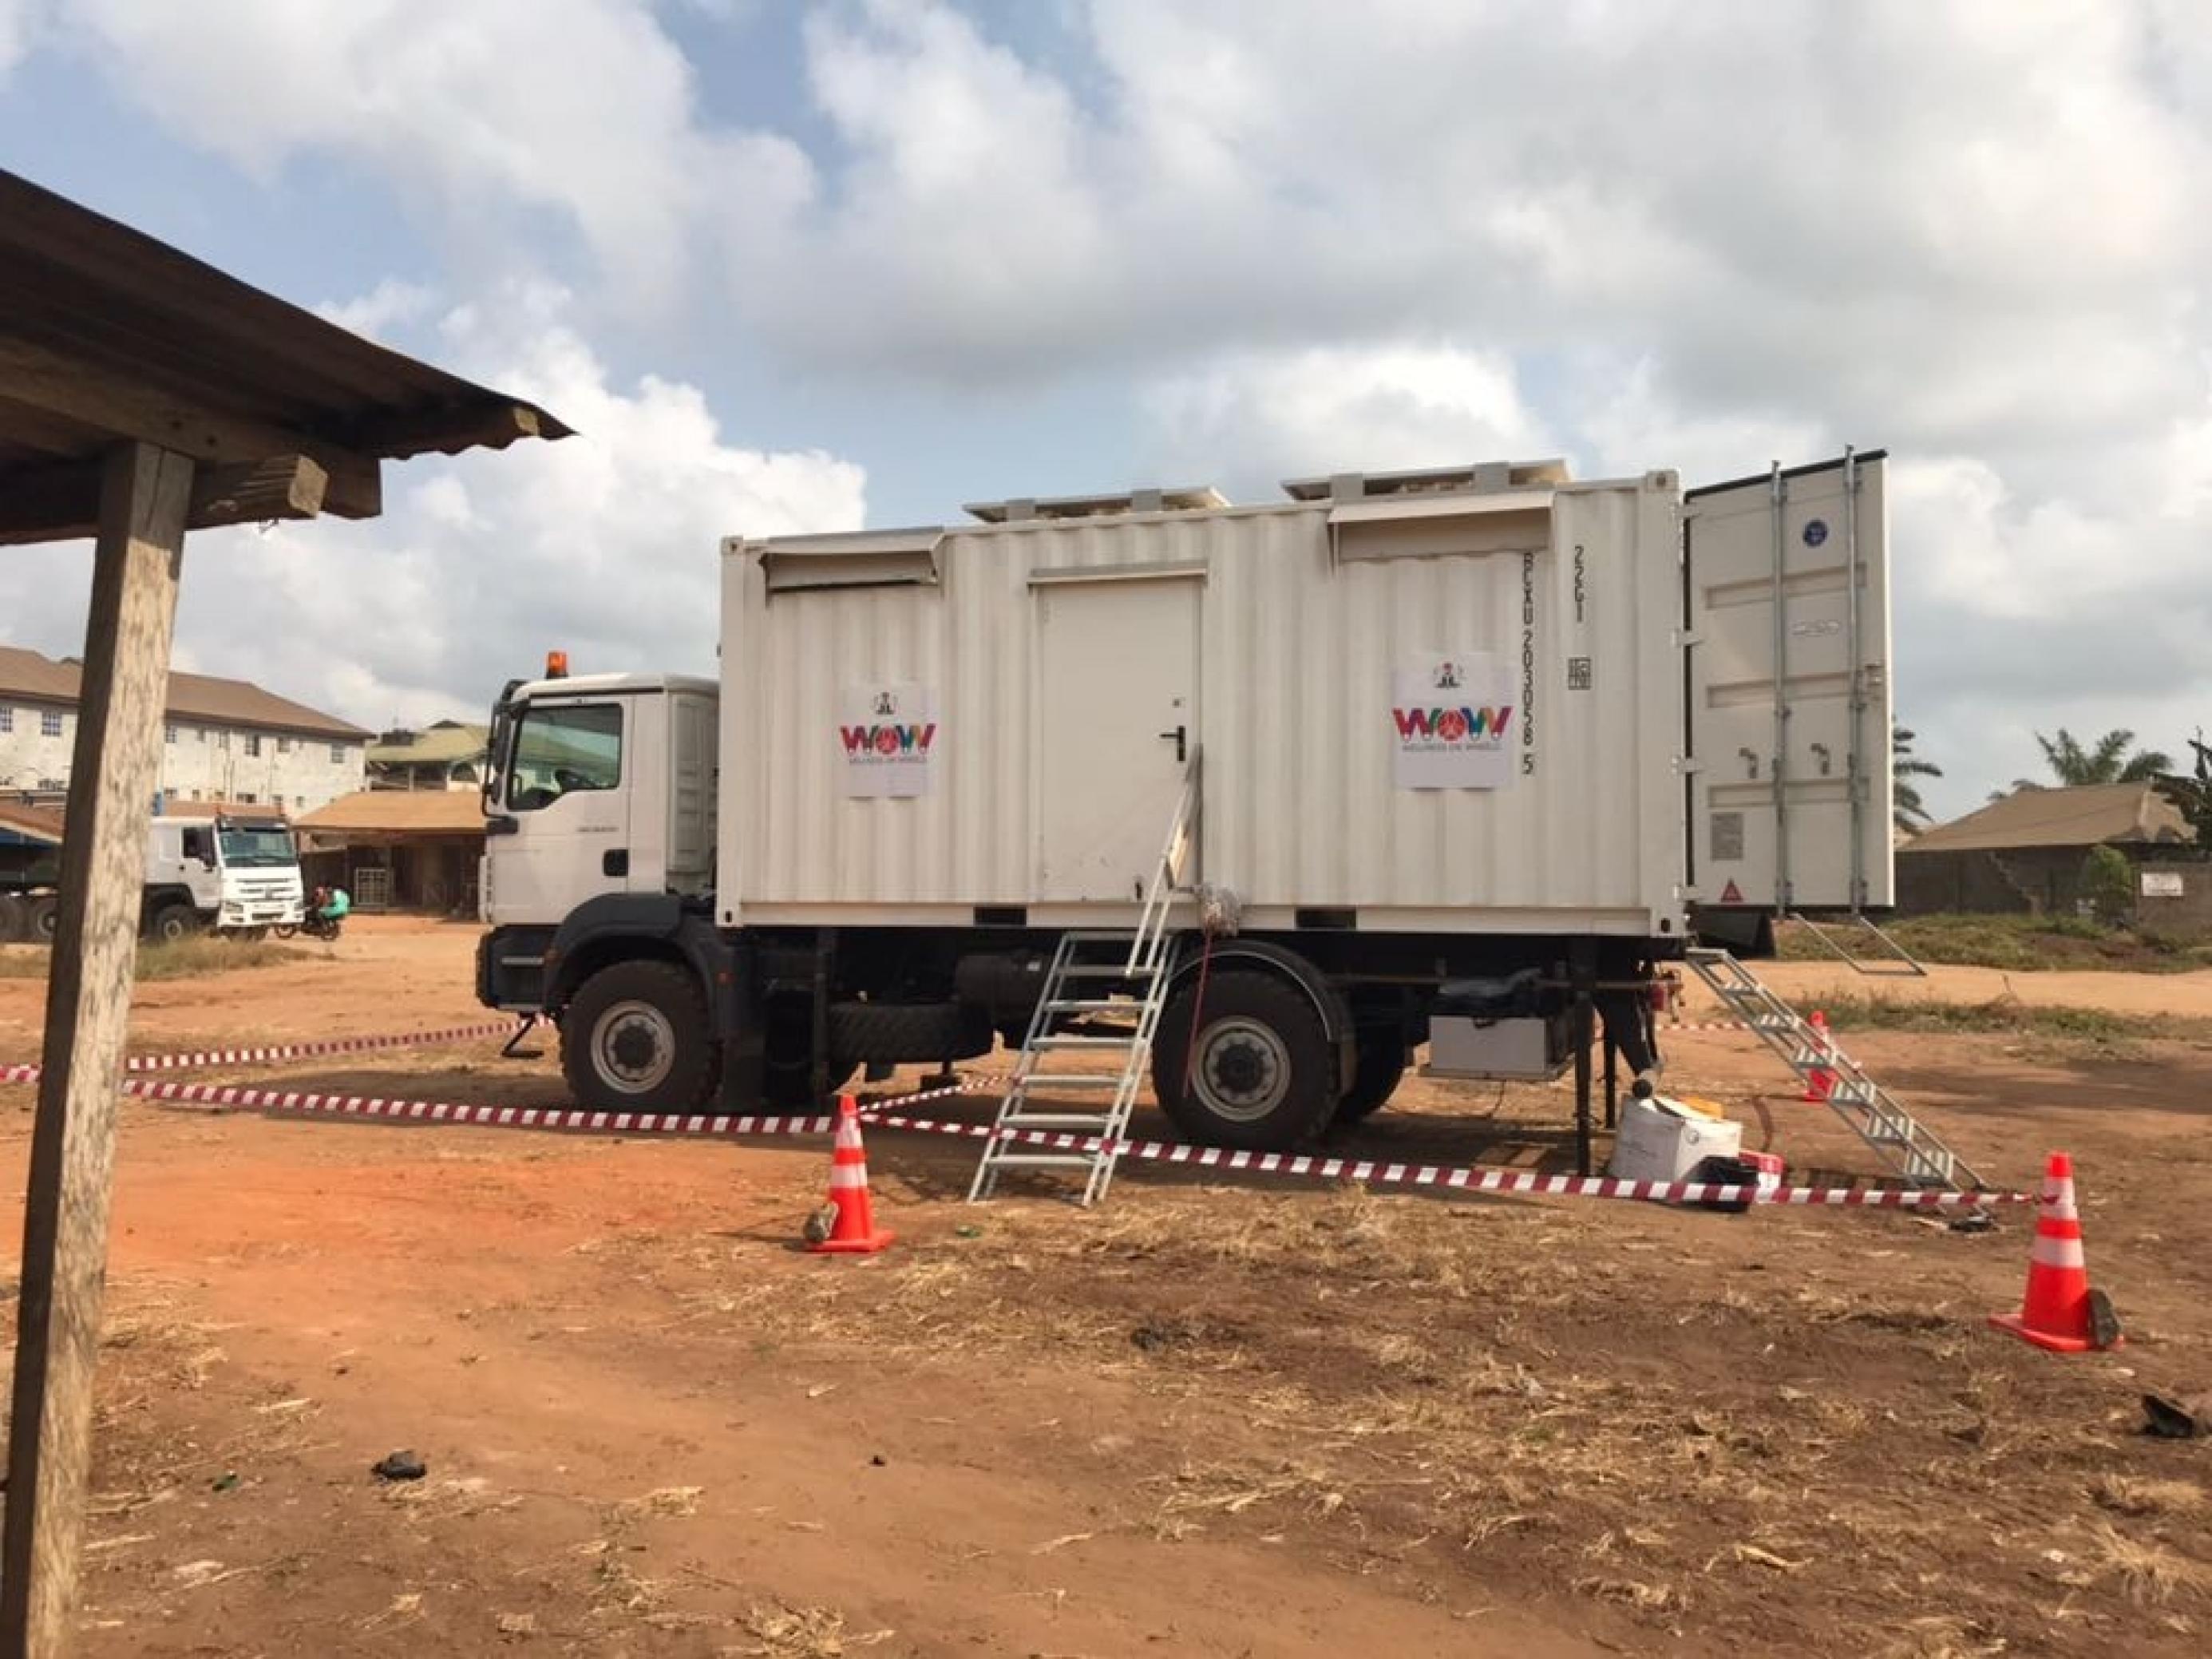 Ein Lkw als mobile Tuberkulose-Kontrolle. Dieses Fahrzeug wird in Nigeria getestet und erreicht auch Städte und Dörfer ohne Arzt oder Krankenhaus. Im Container steckt eine Diagnostikeinheit.